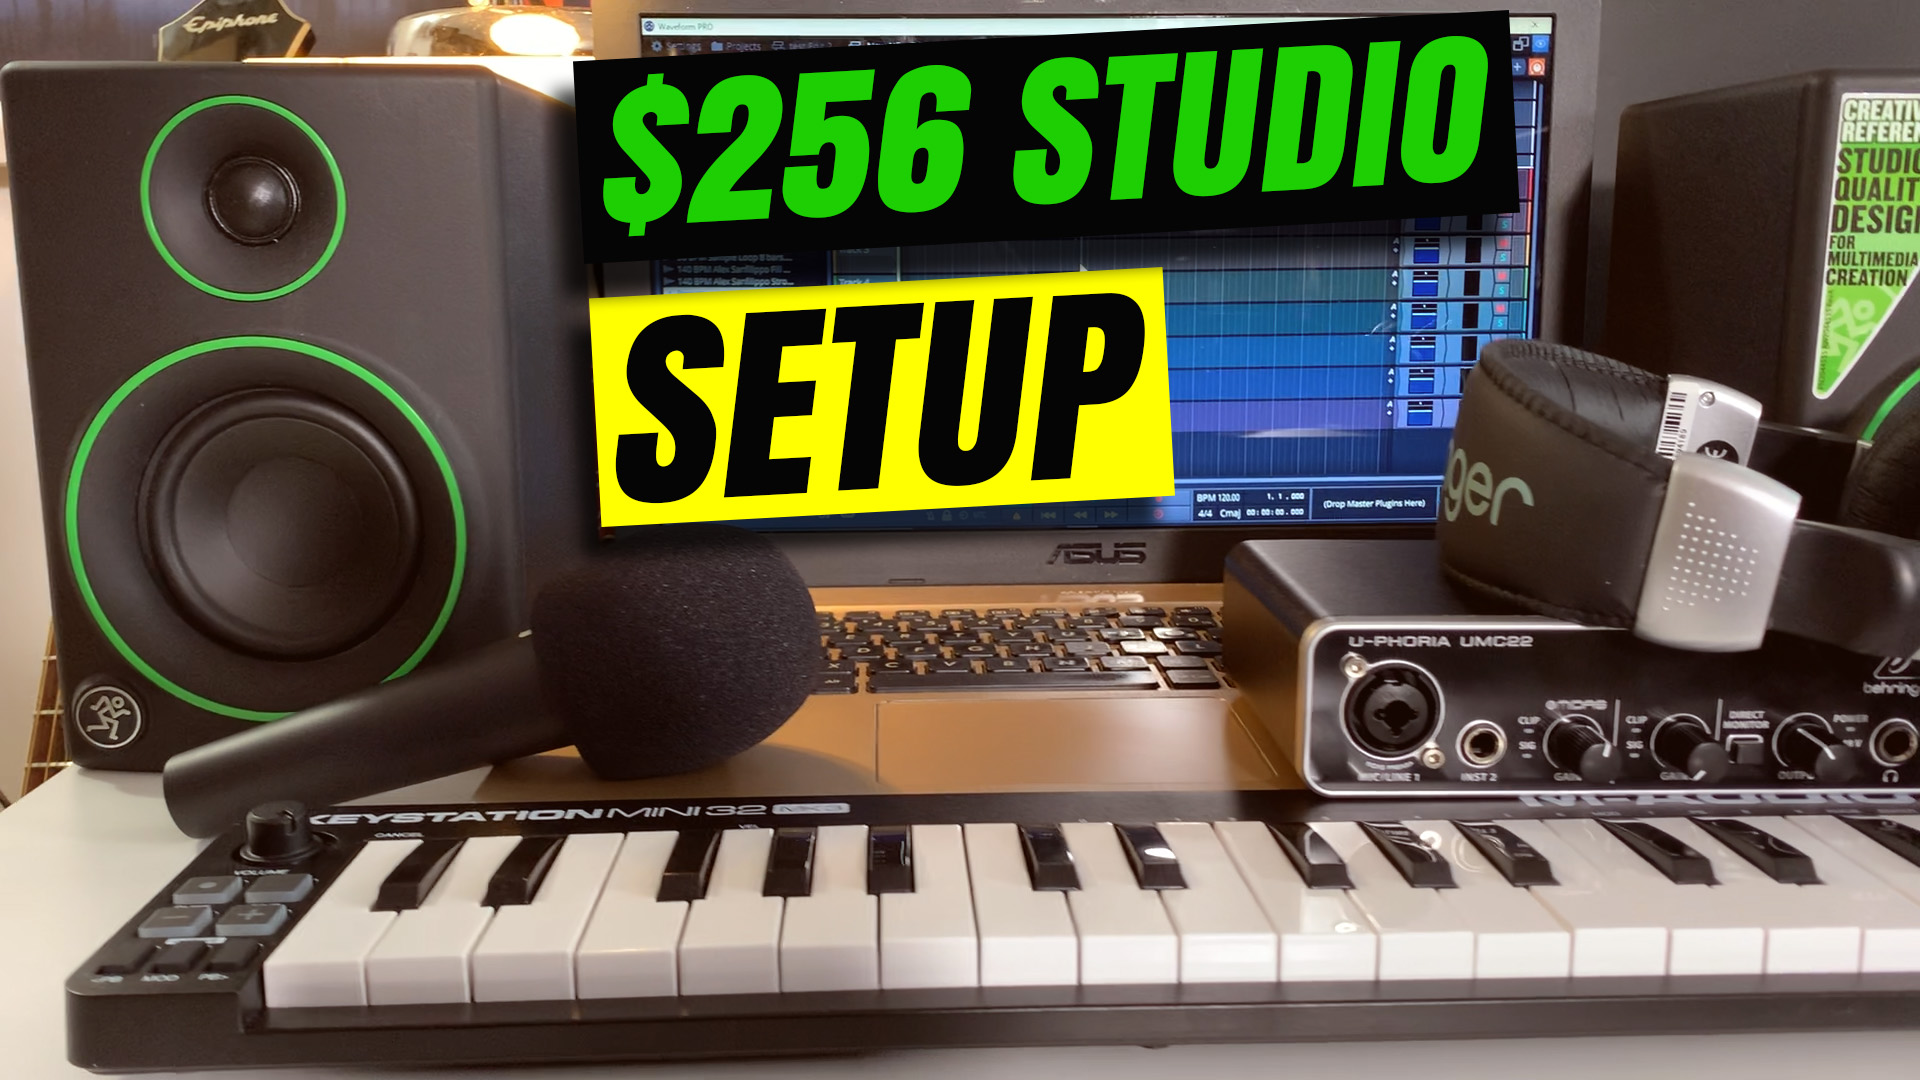 Budget Home Recording Studio Setup For Beginners 2021 – Audio Tech TV